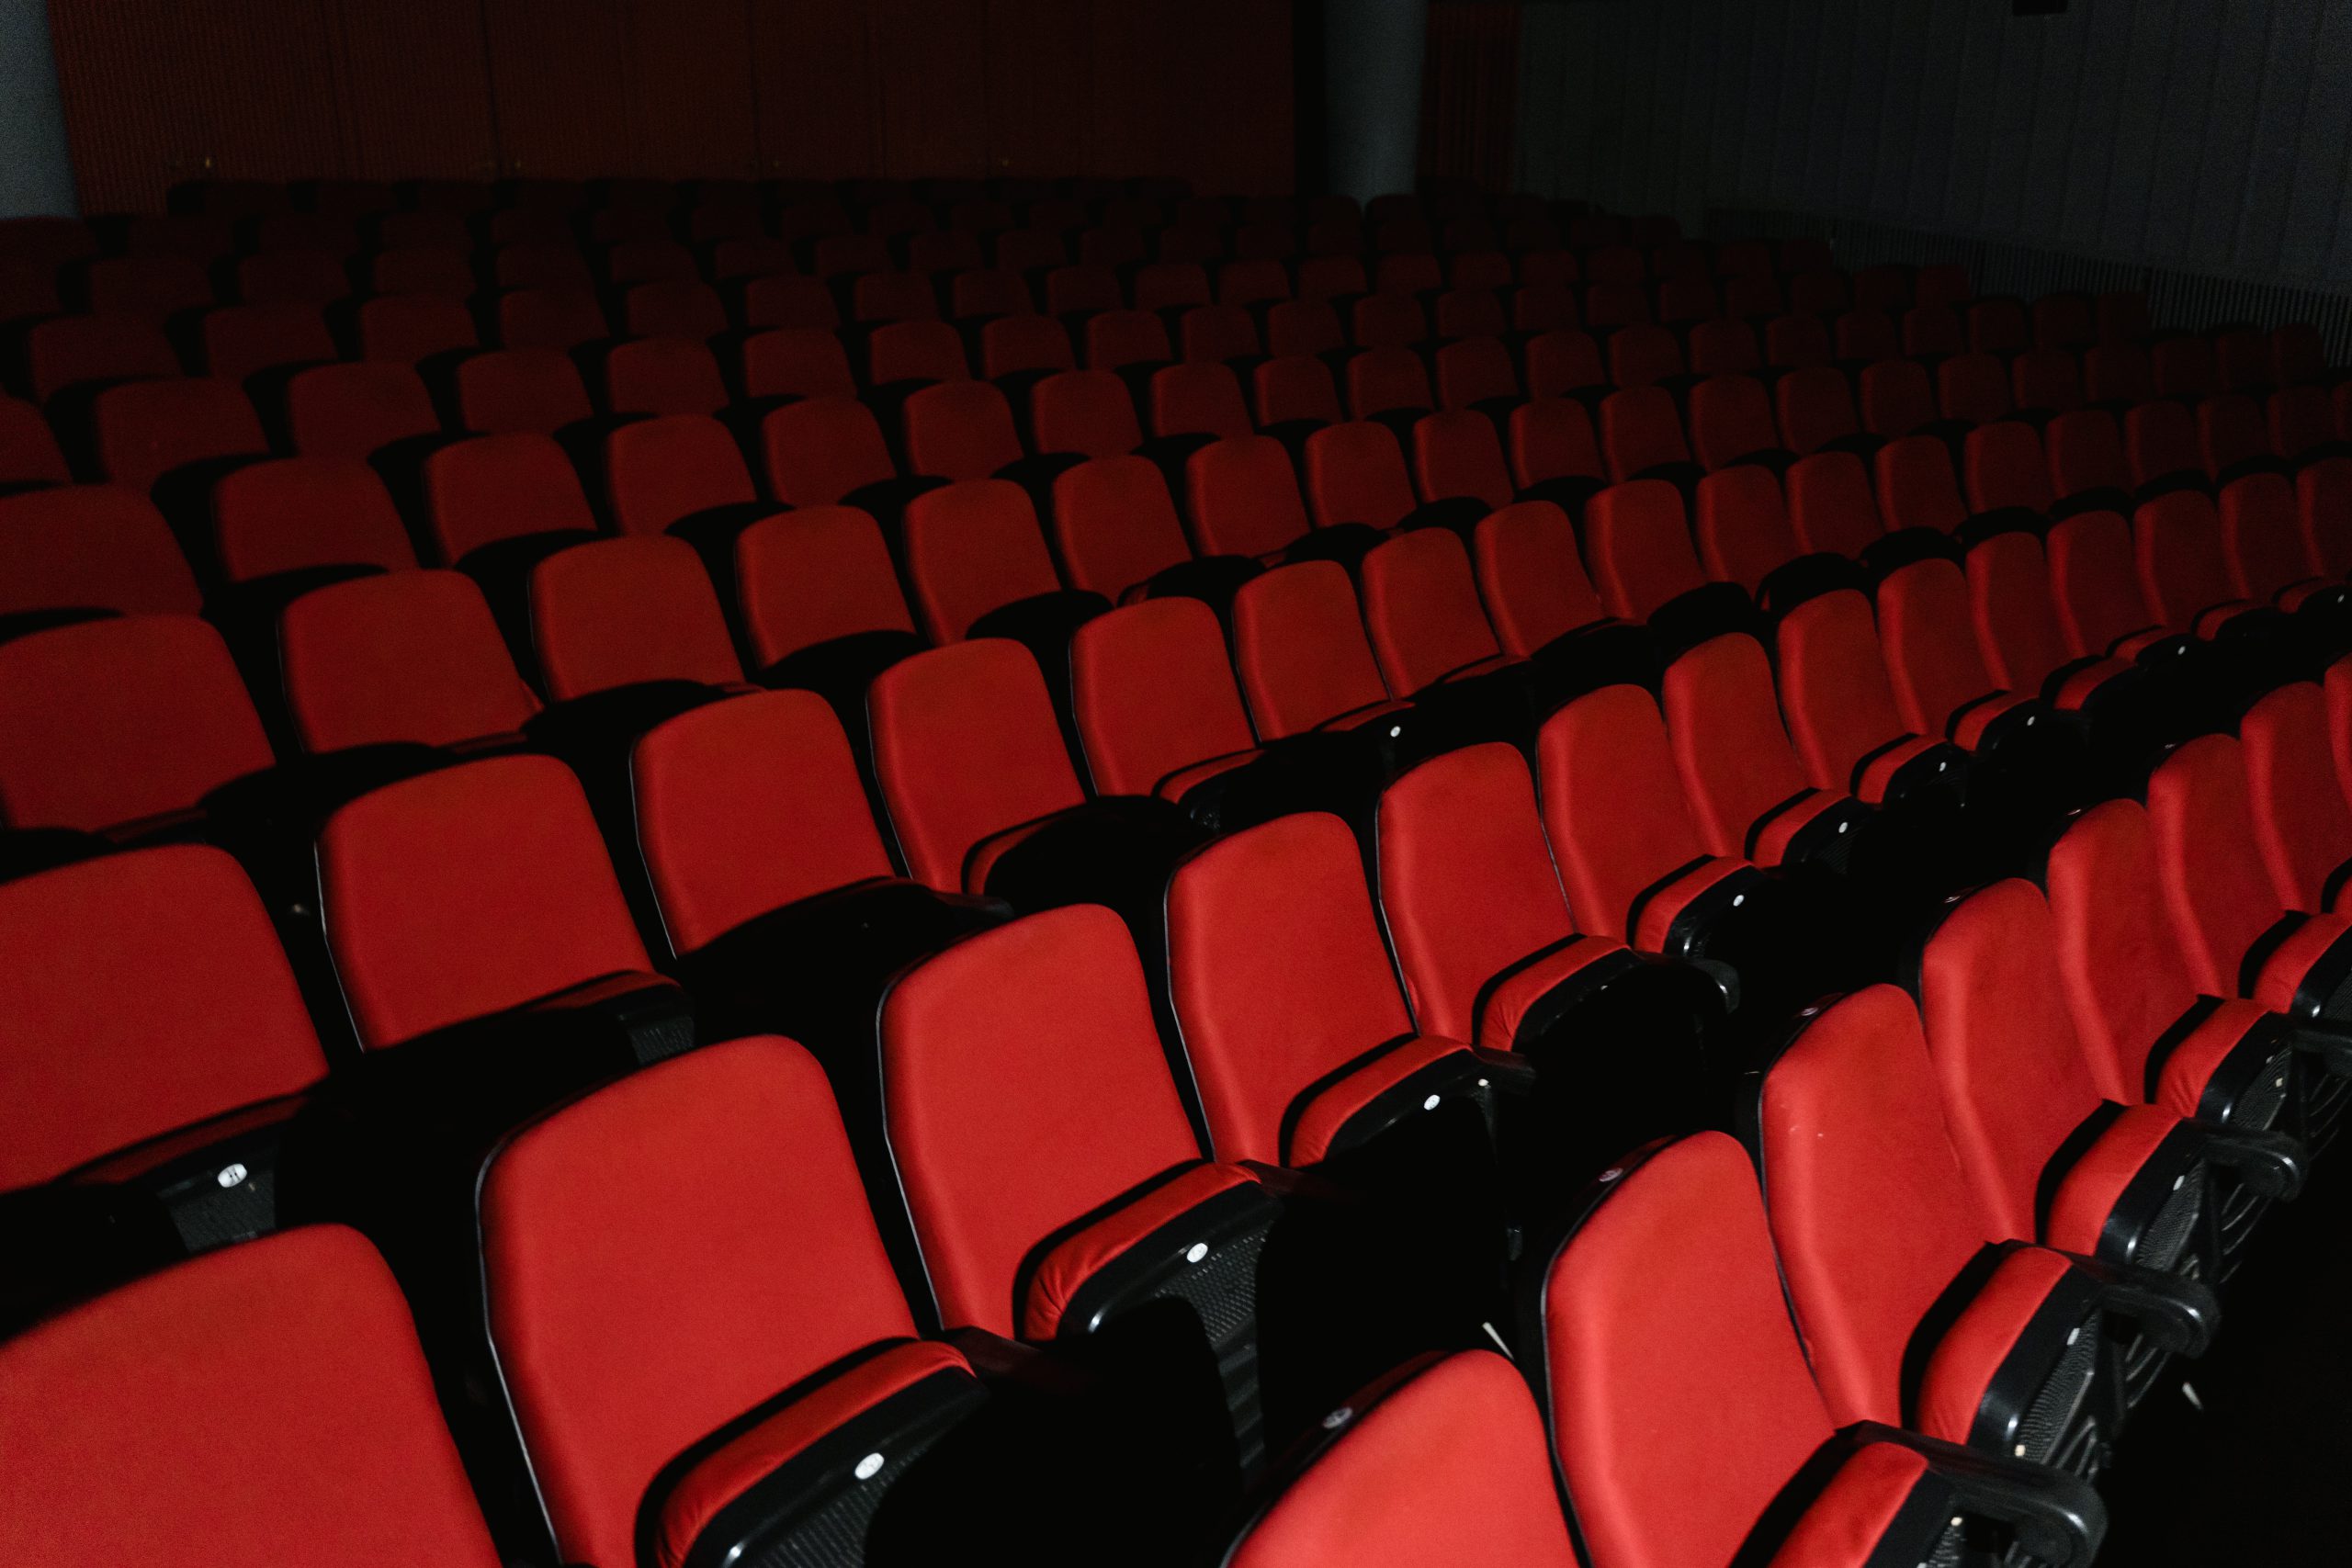 Gloednieuwe bioscoopzaal Kinepolis "combineert het beste beeld en geluid"